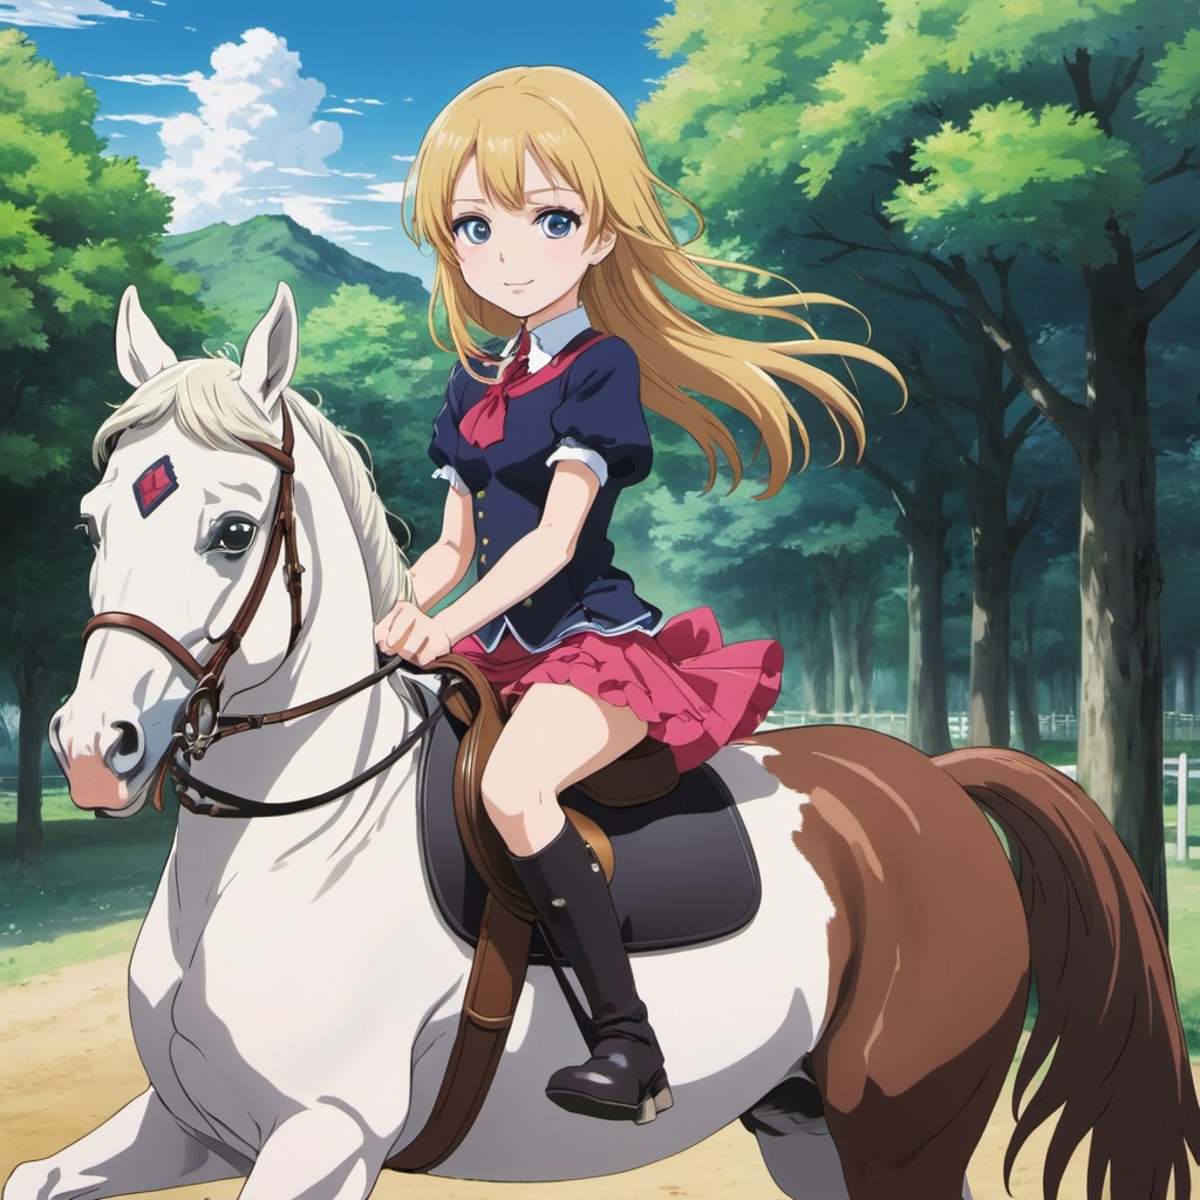 a pretty girl riding a horse, 2010 anime